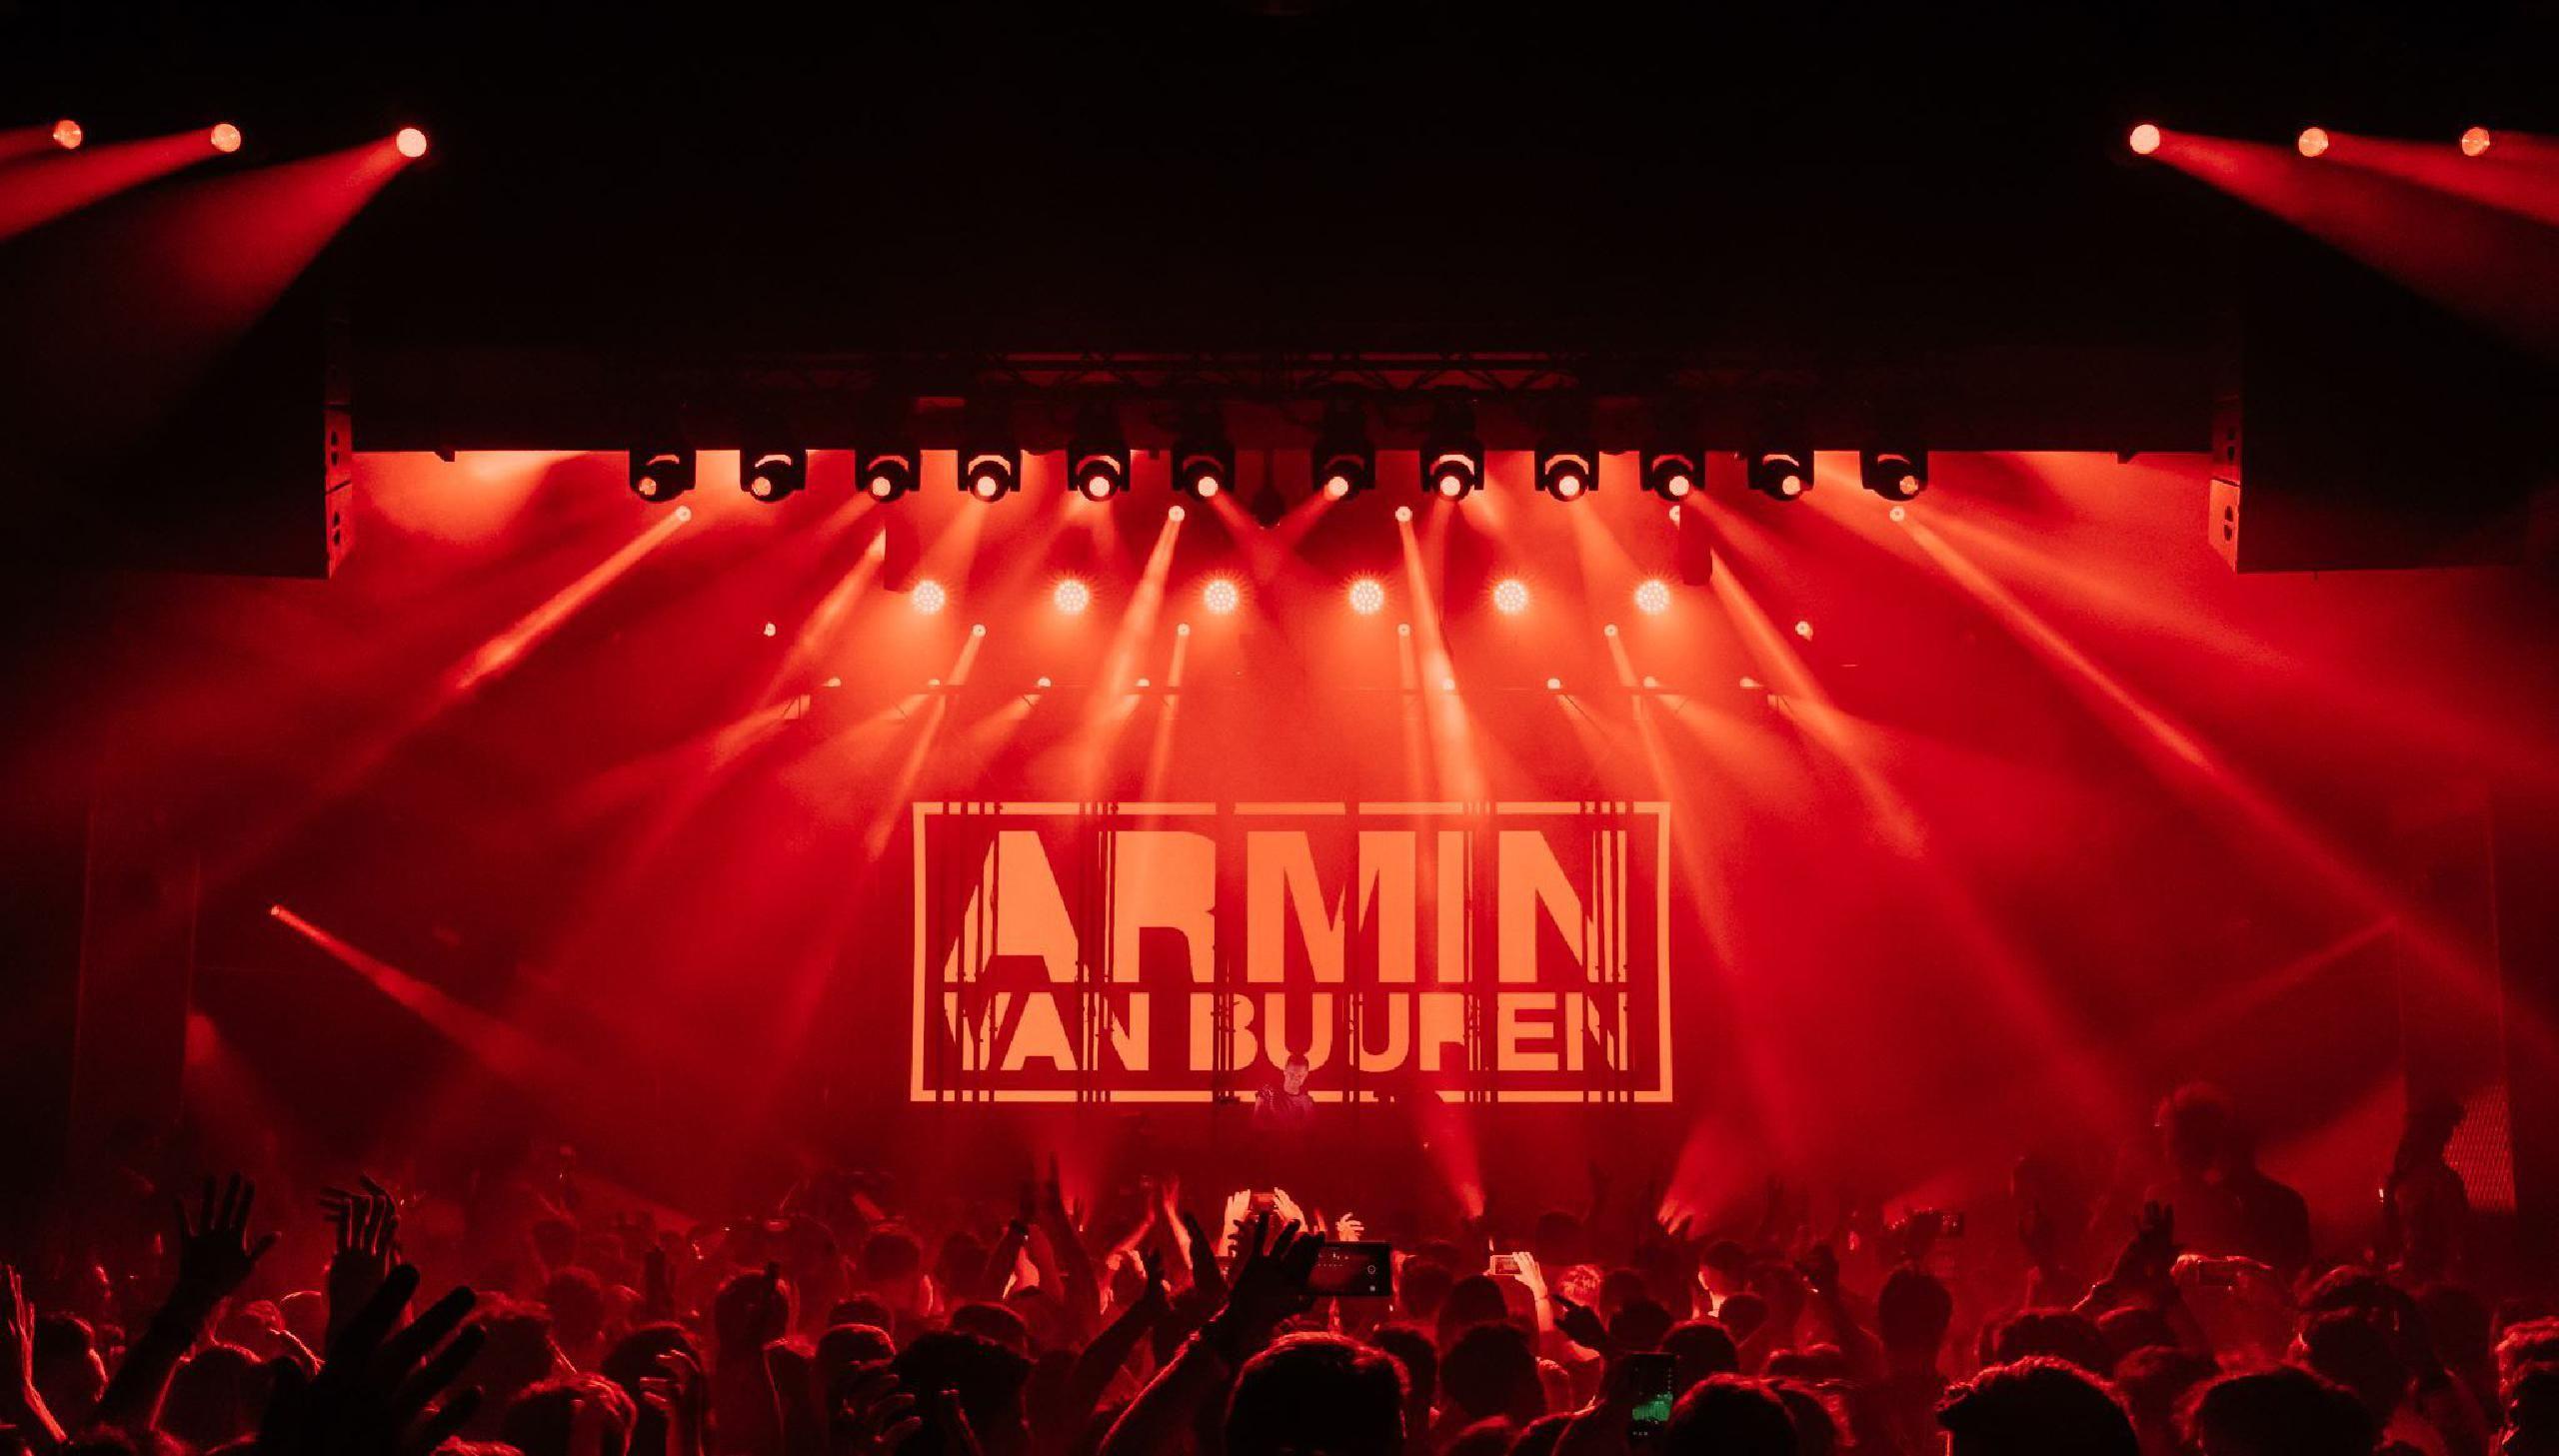 Armin van Buuren tour dates 2017 2018. Armin van Buuren tickets